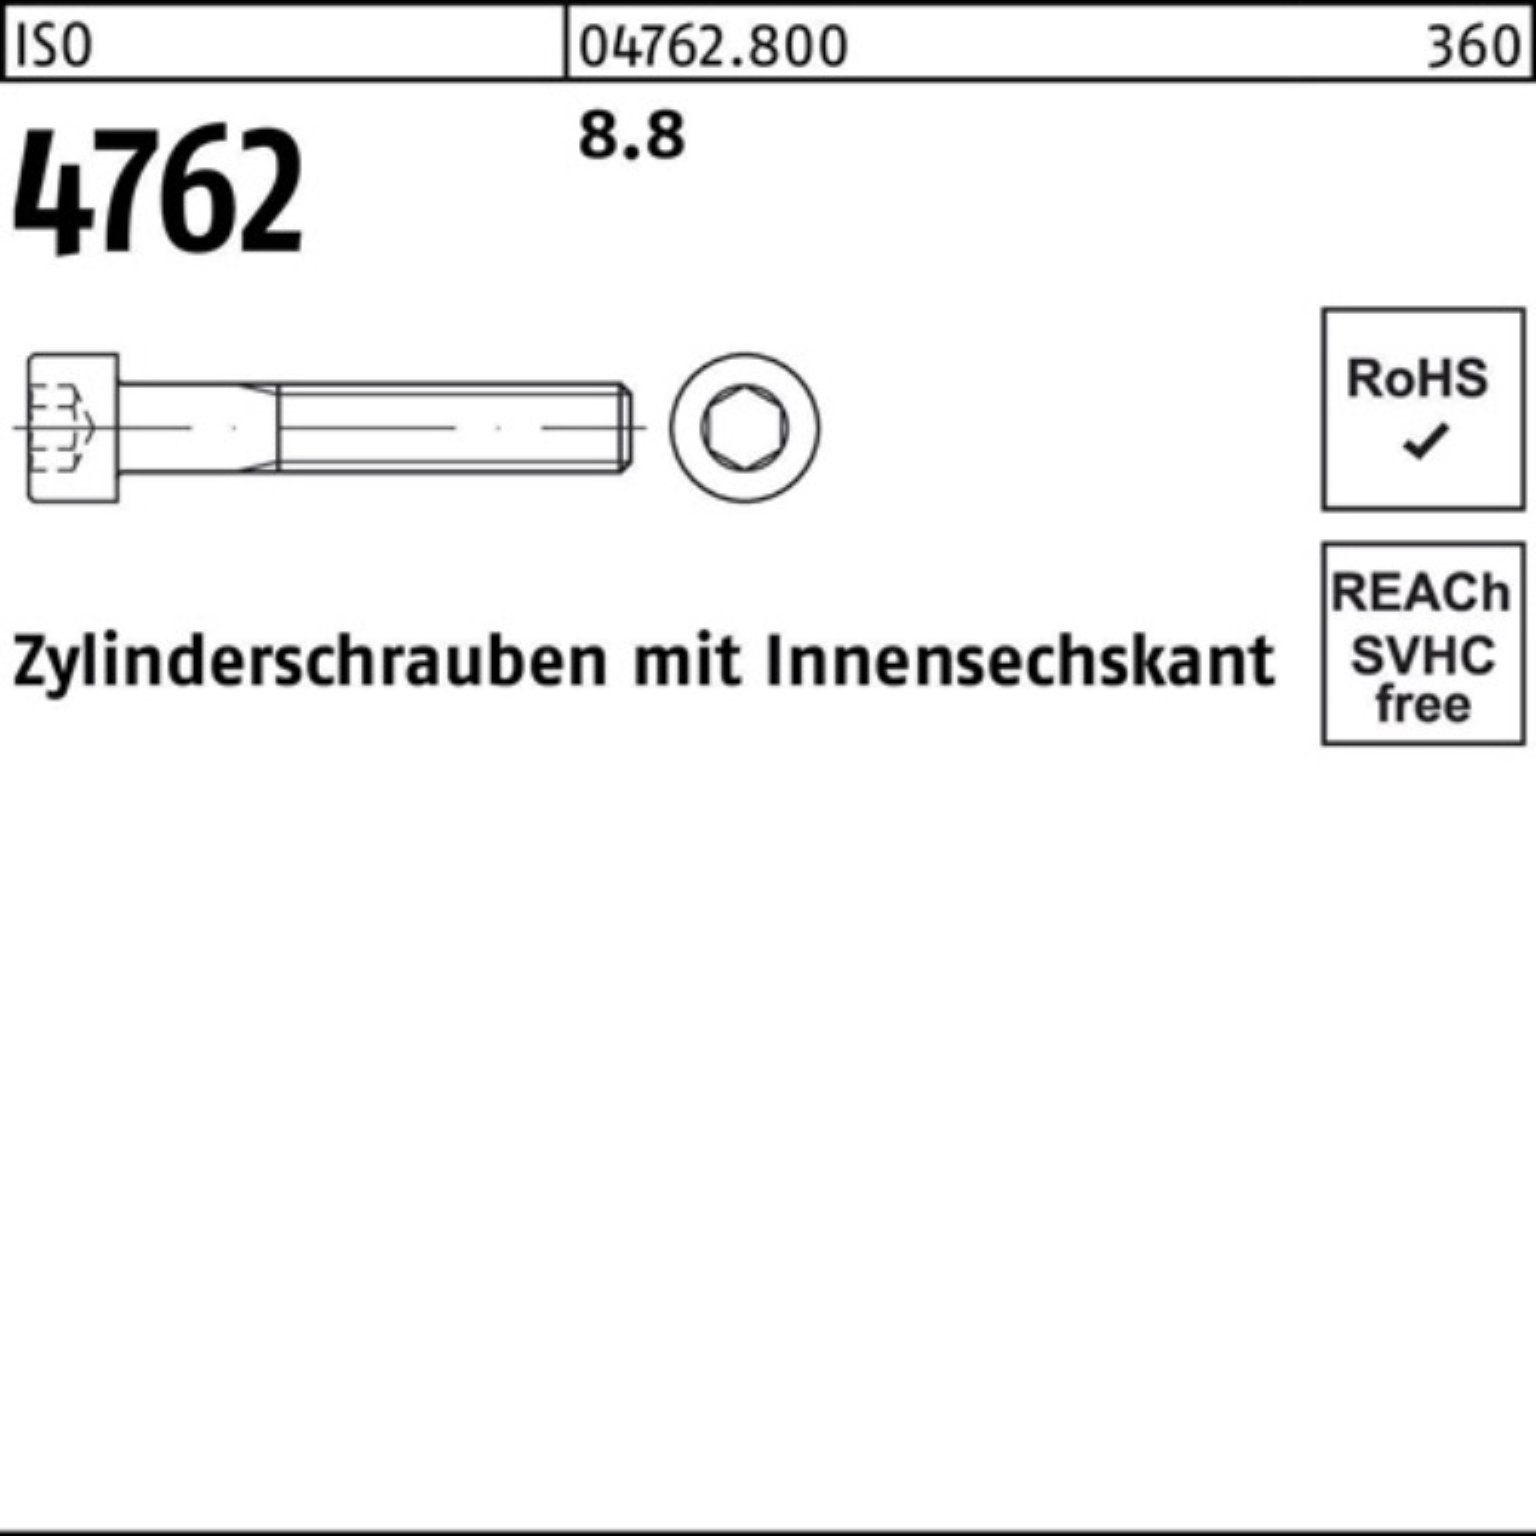 Zylinderschraube Reyher Innen-6kt Pack Zylinderschraube 200er M4x 4762 Stück 8.8 I 85 ISO 200